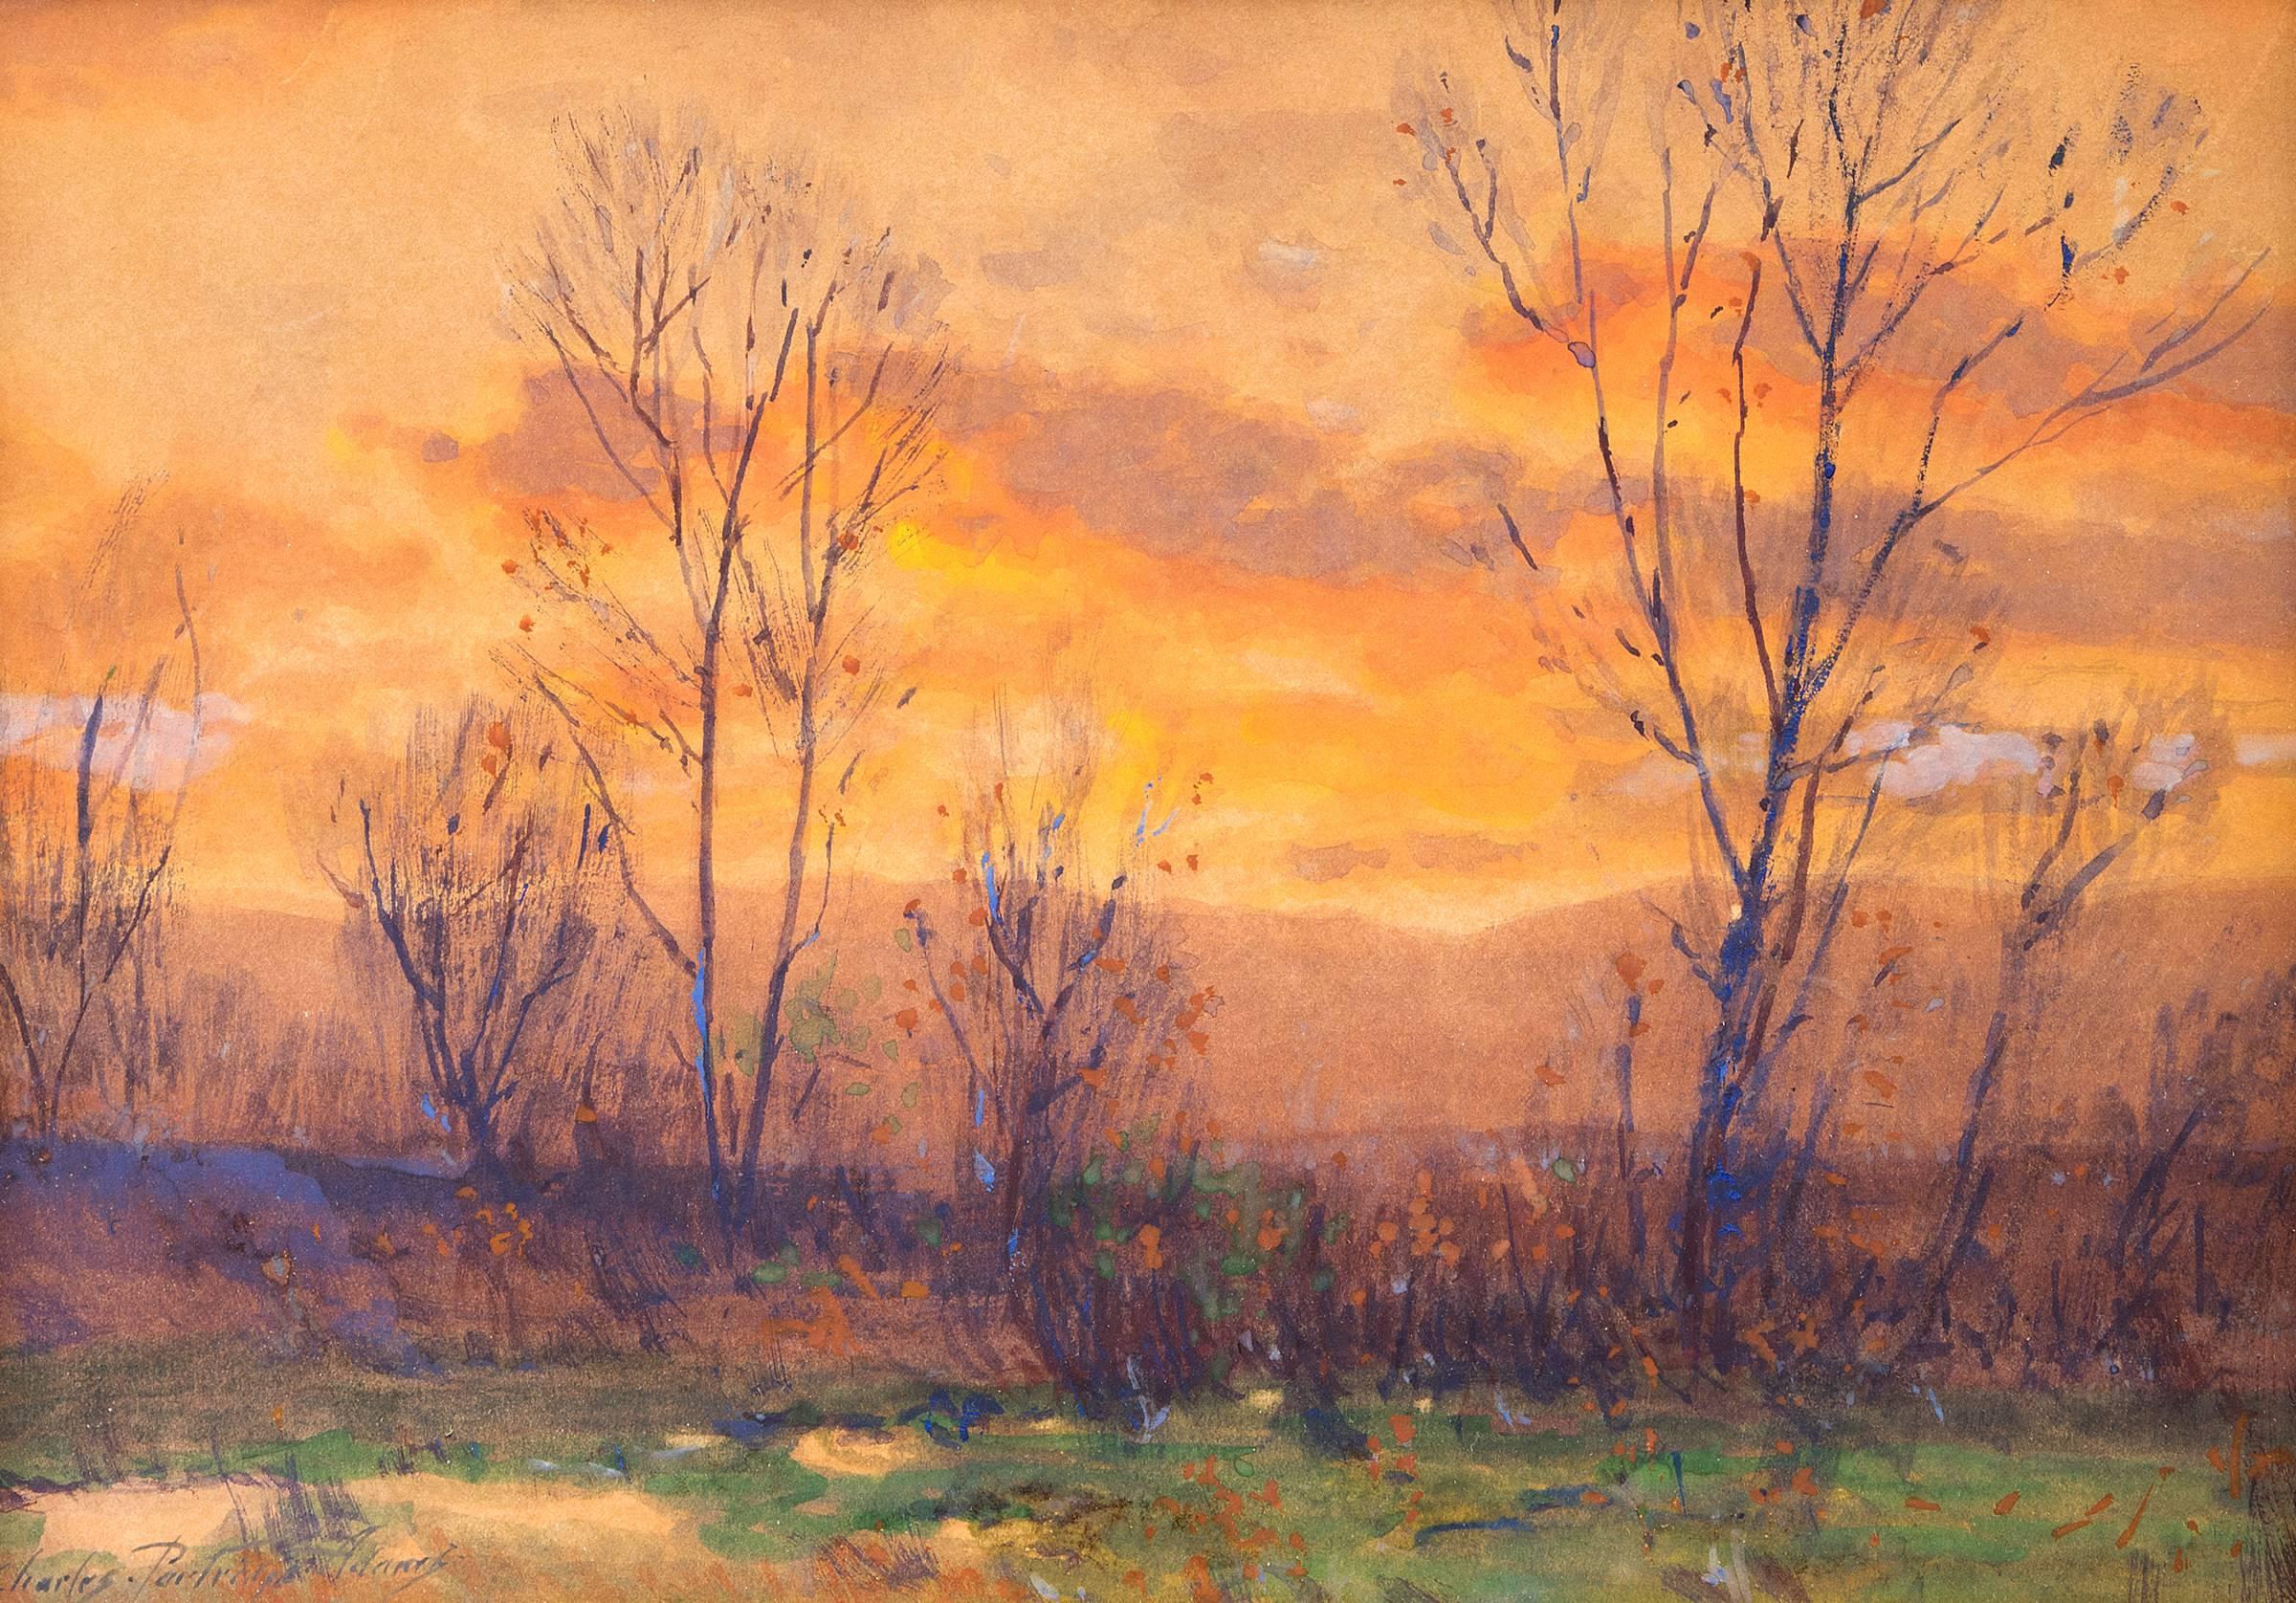 Landscape Painting Charles Partridge Adams - Peinture de paysage traditionnelle du coucher de soleil, le long de la chaîne frontale, Colorado, années 1900